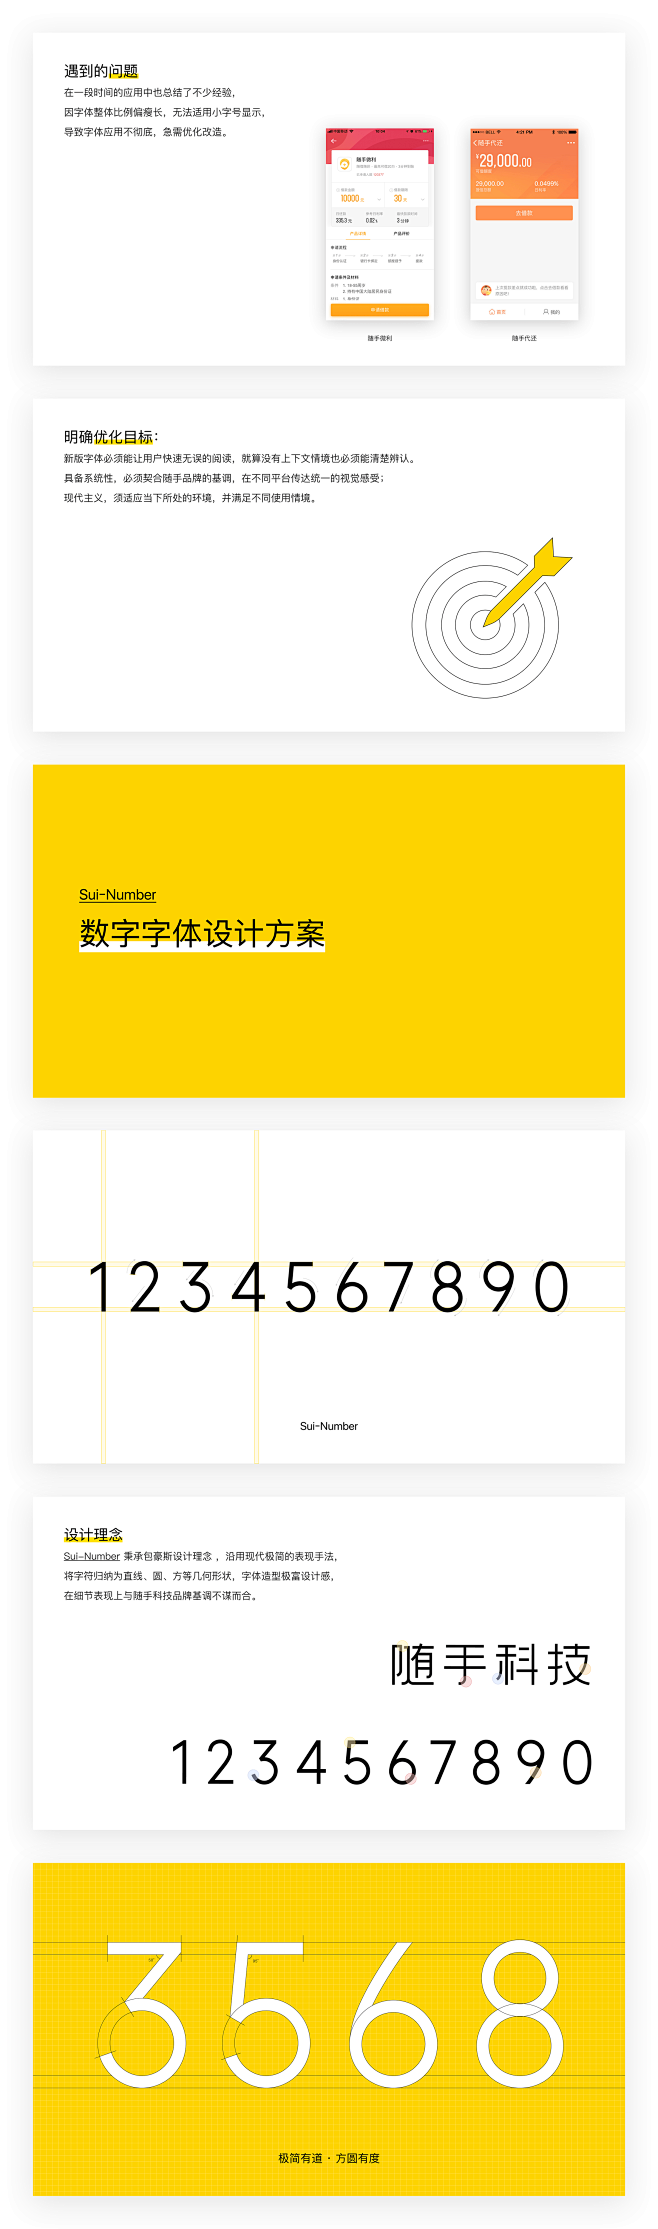 Sui-Number 随手数字字体设计 ...